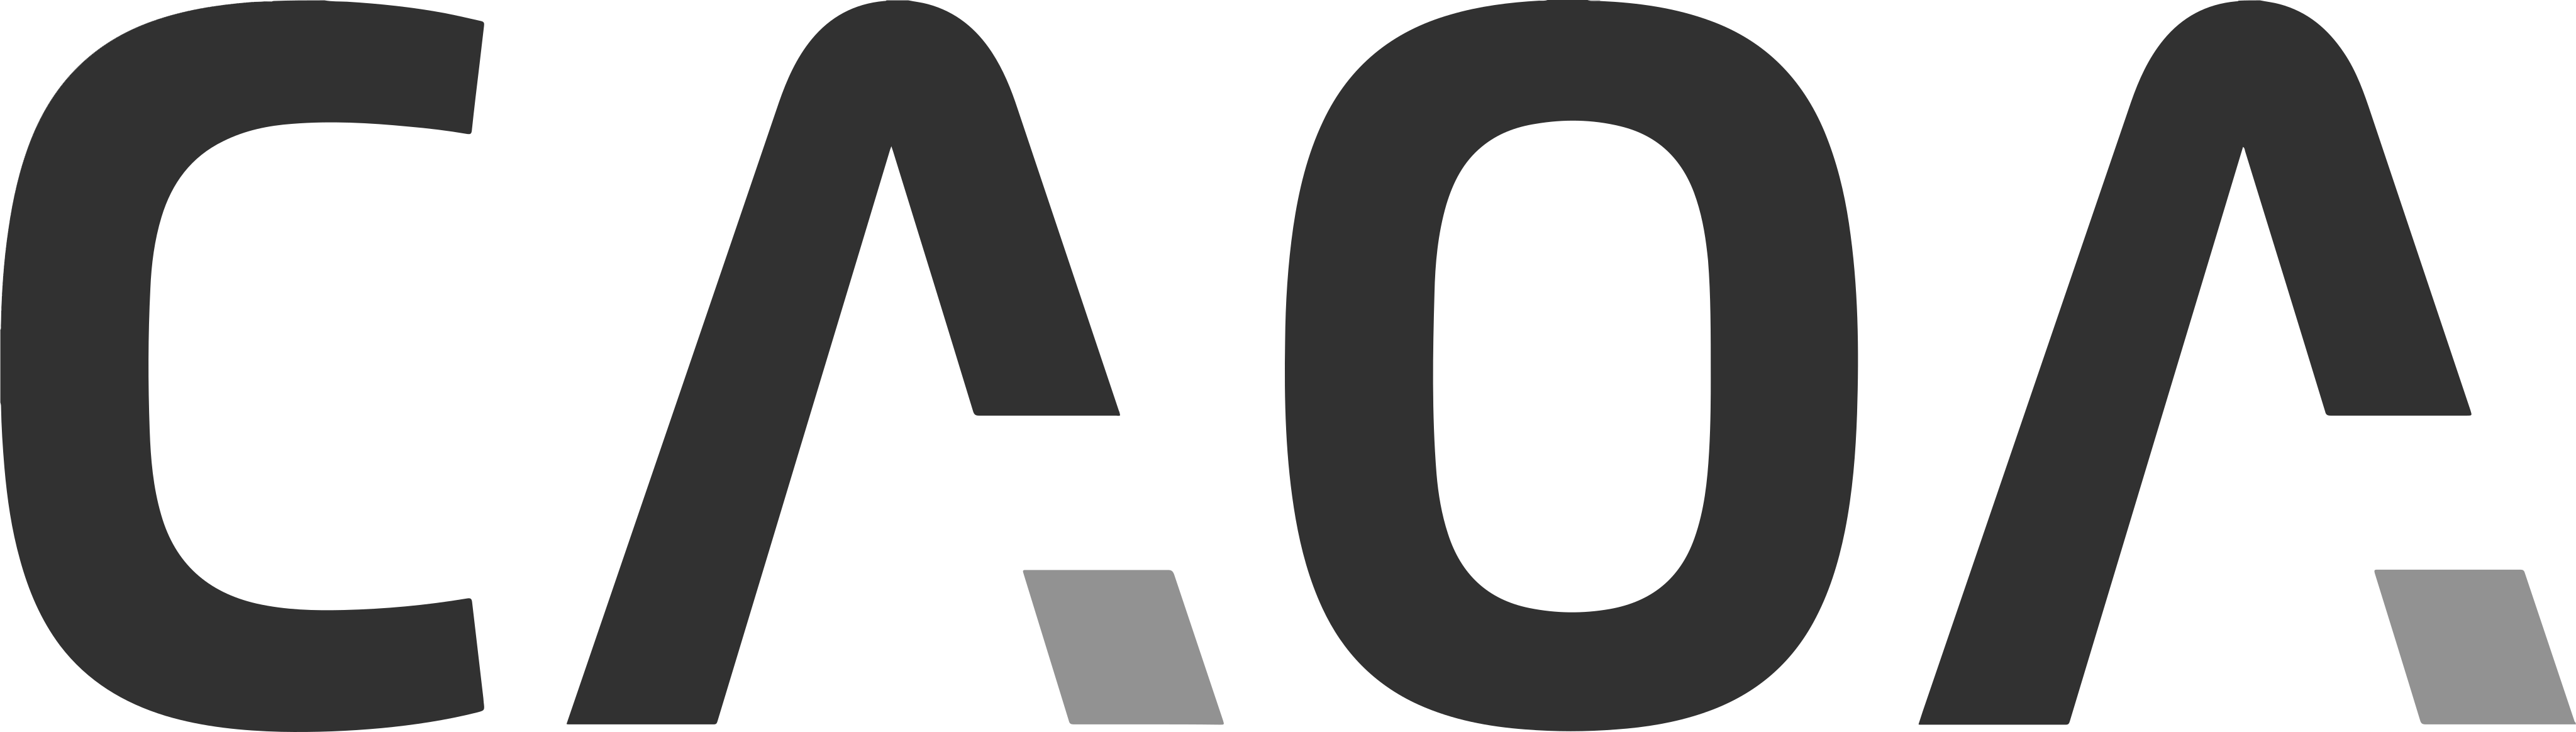 Logotipo da Caoa